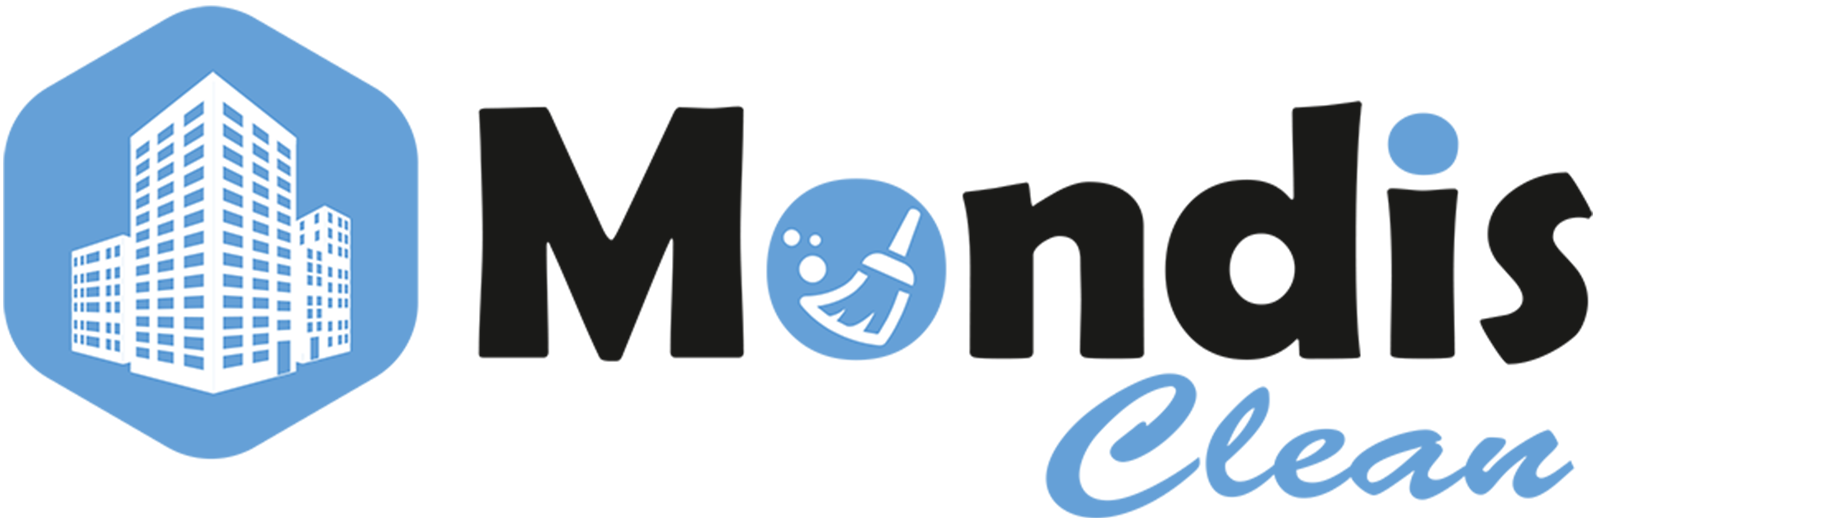 Mondis.sk logo